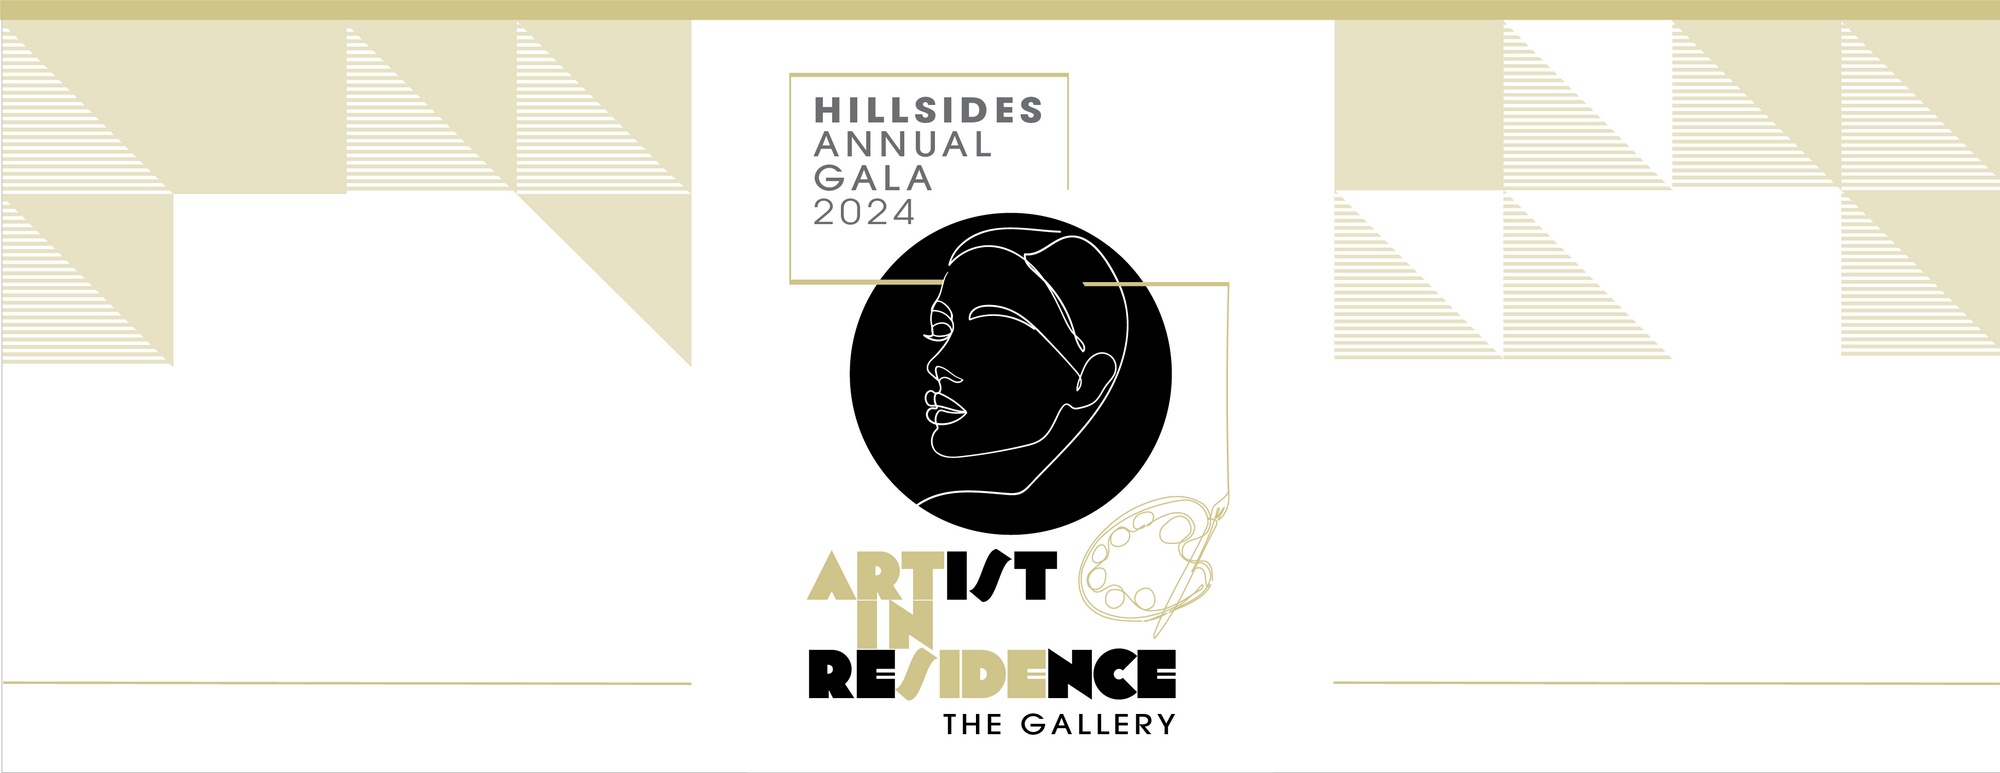 Artist in Residence, Hillsides 2024 Annual Gala